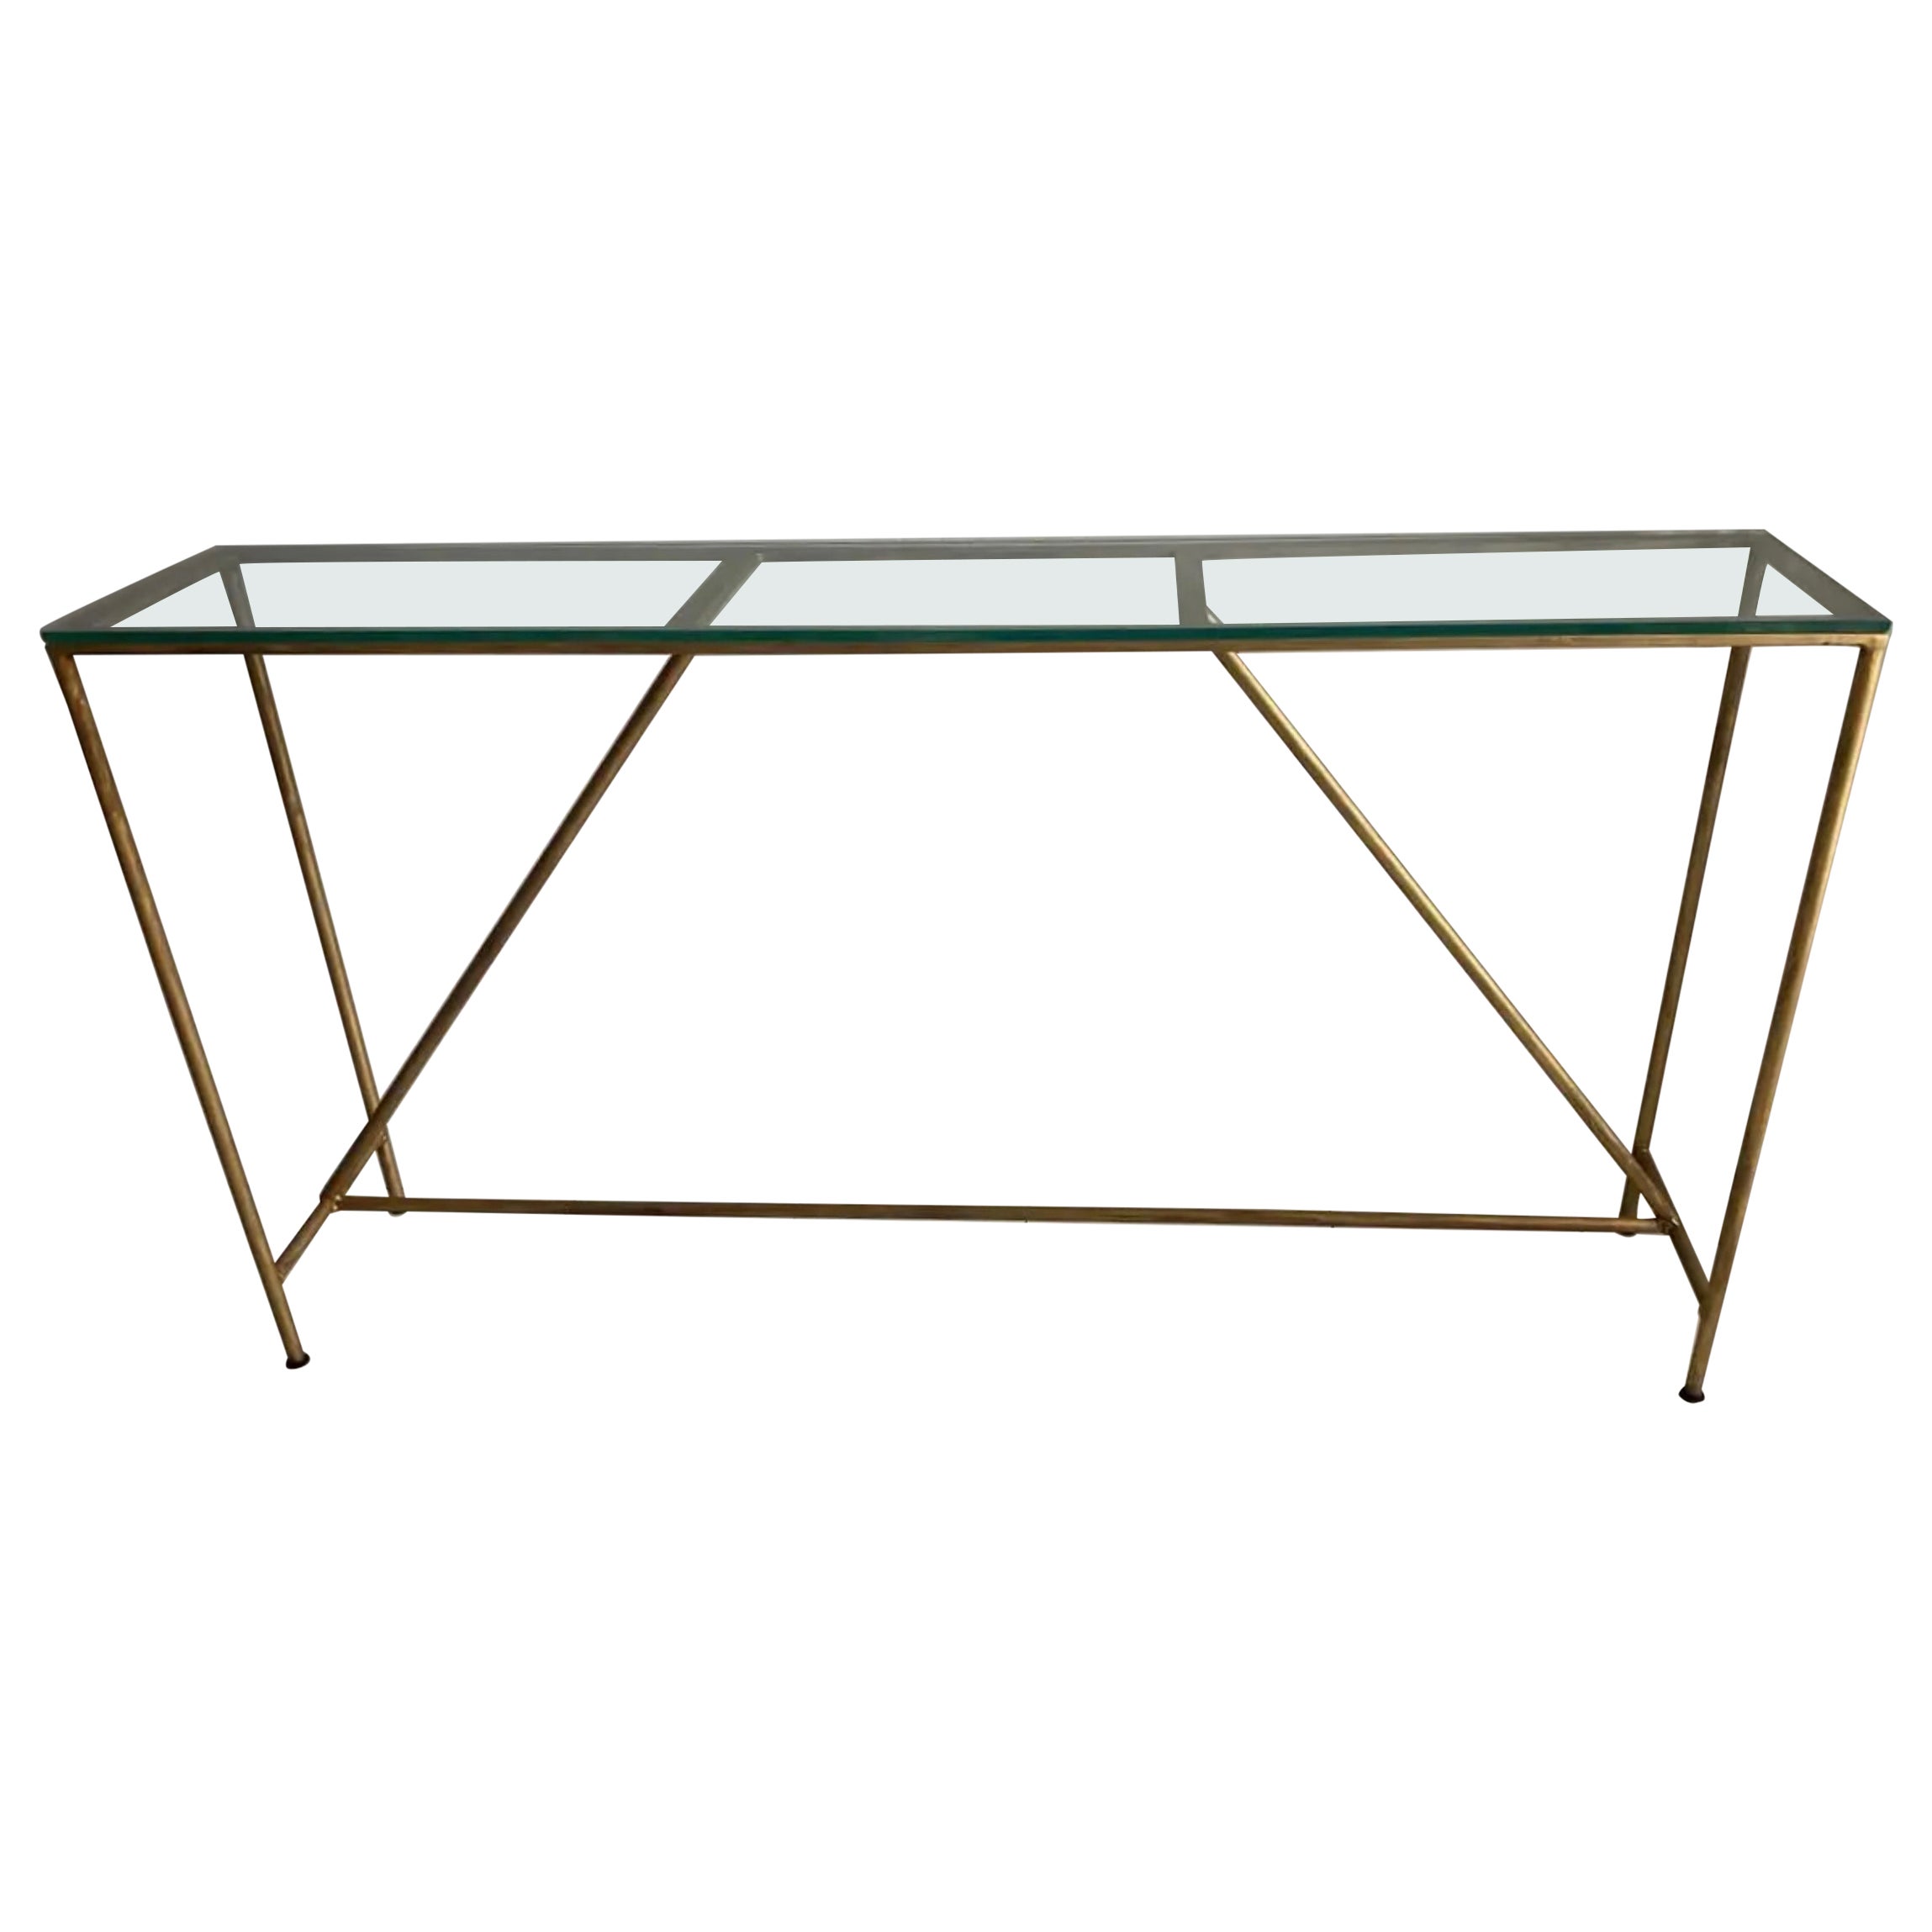 Benutzerdefinierte vergoldeten Metall Eisen Basis Konsolentisch, Schreibtisch, oder Ding Tisch Basis